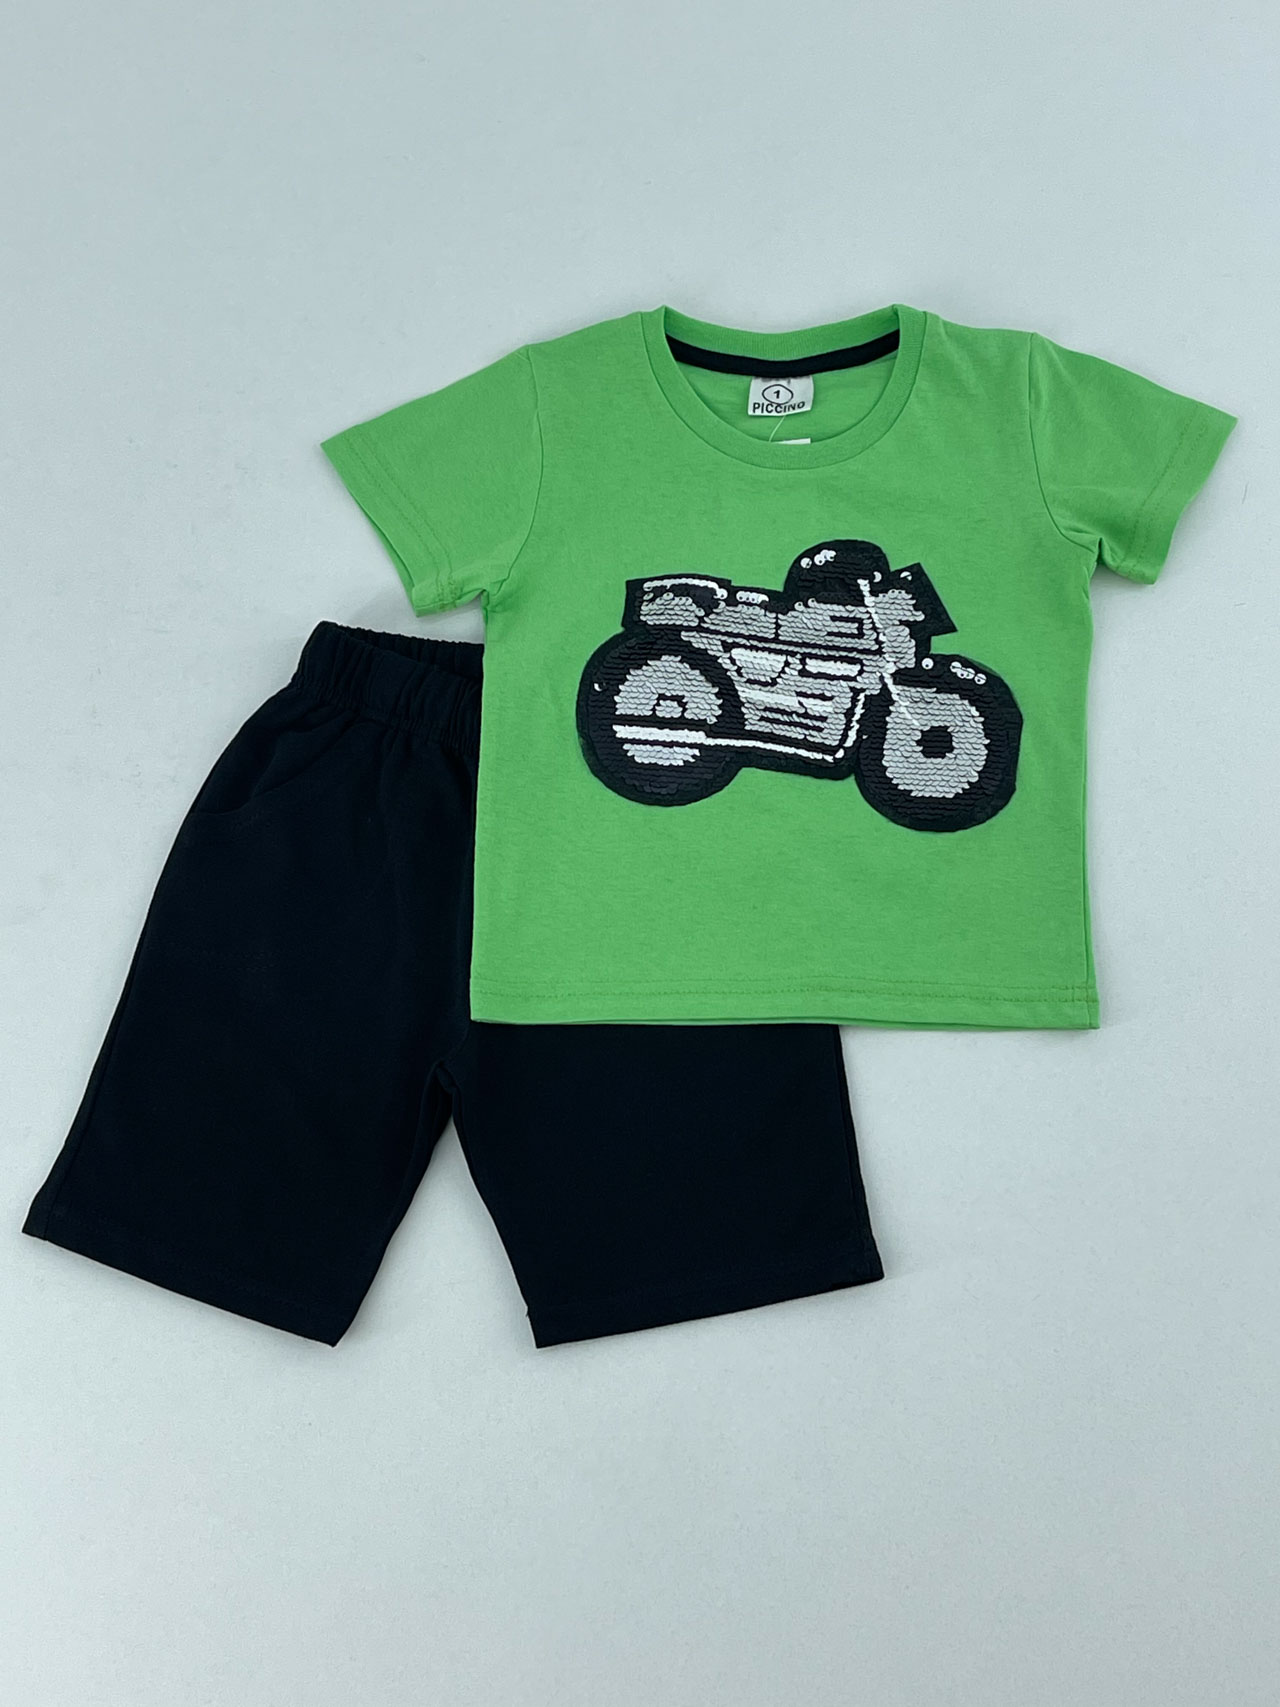 Σετ αγόρι μπλούζα-βερμούδα κωδ. 120138 μπροστινή όψη πράσινο-μαύρο